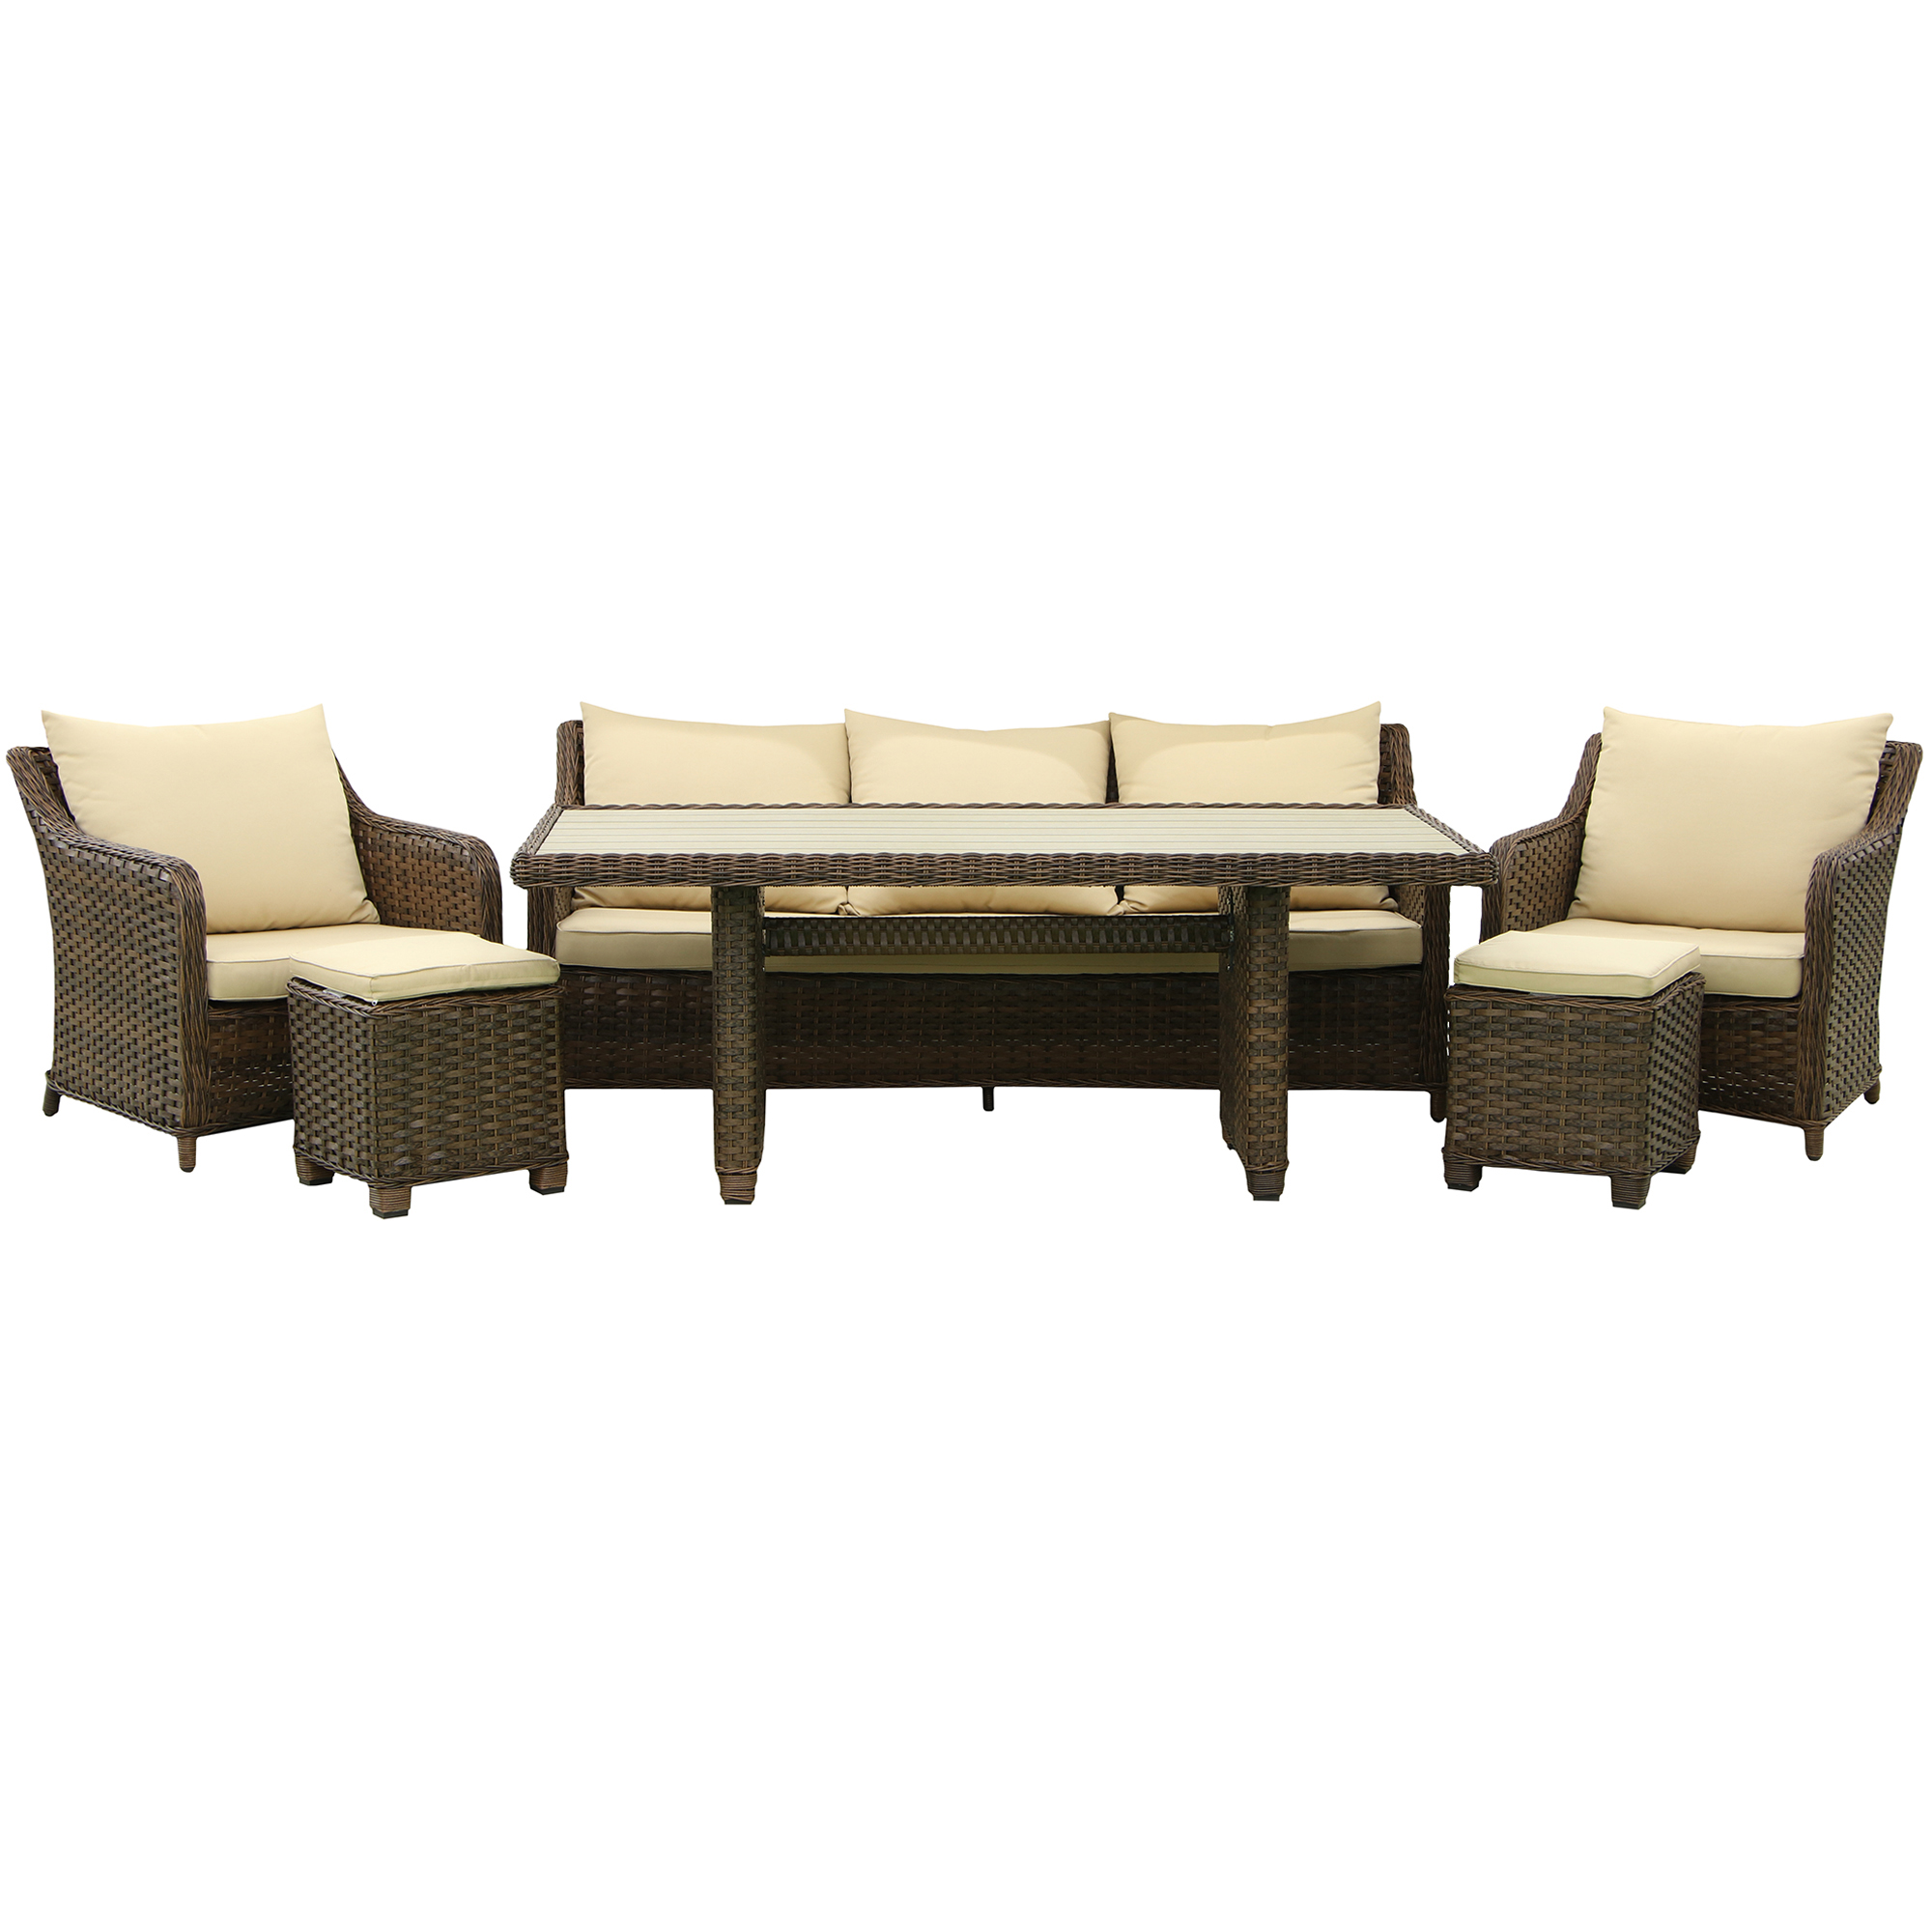 Комплект мебели Yuhang 6 предметов, цвет коричневый, размер 86x180x68.5 см - фото 1